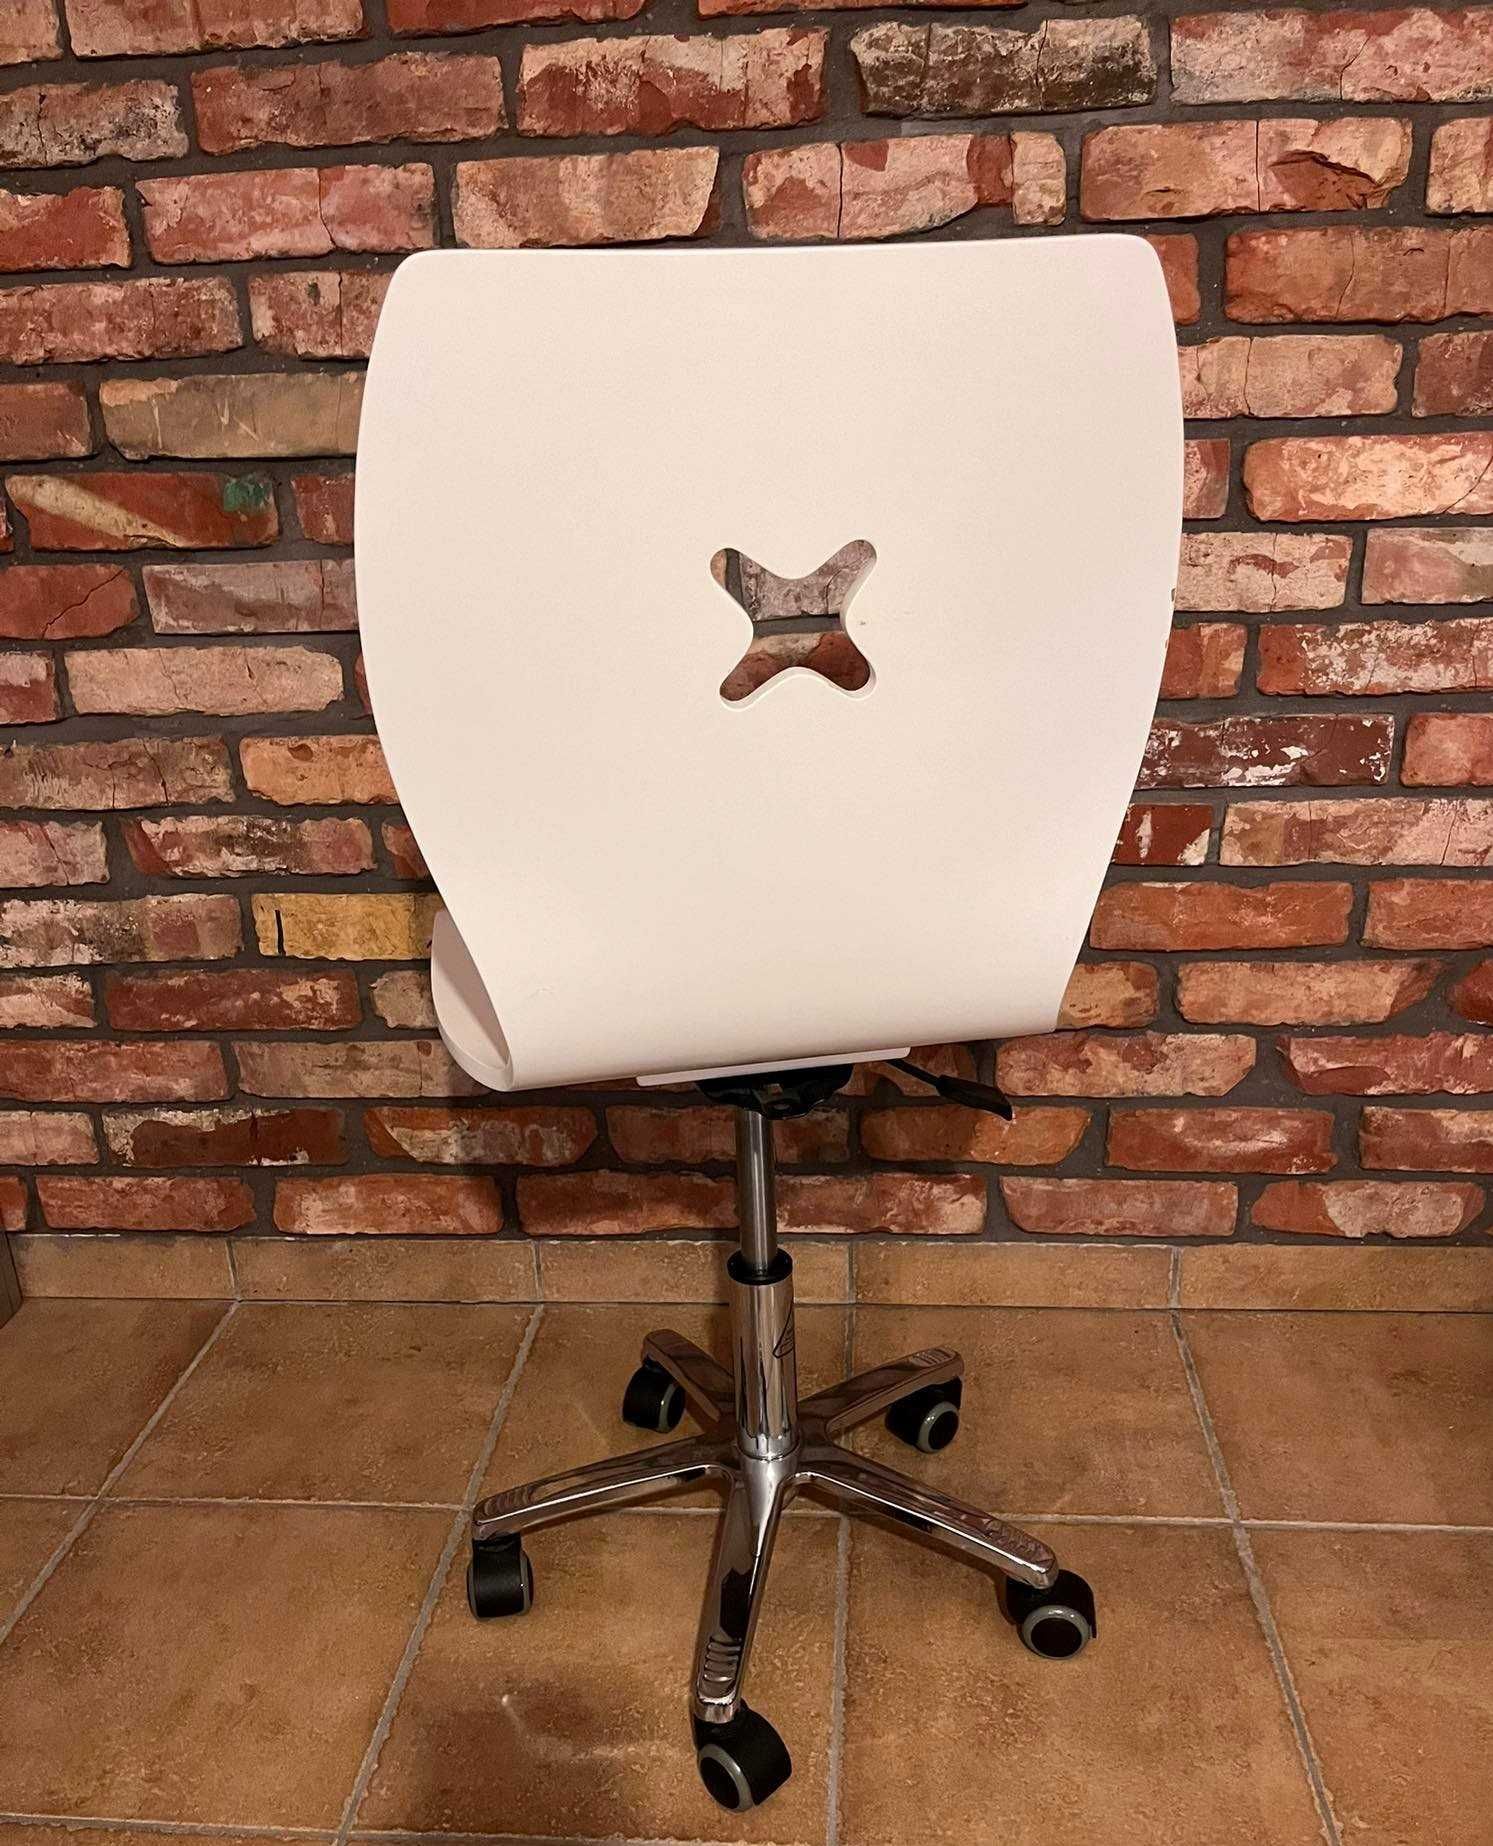 Krzesło obrotowe białe ze sklejki na kółkach